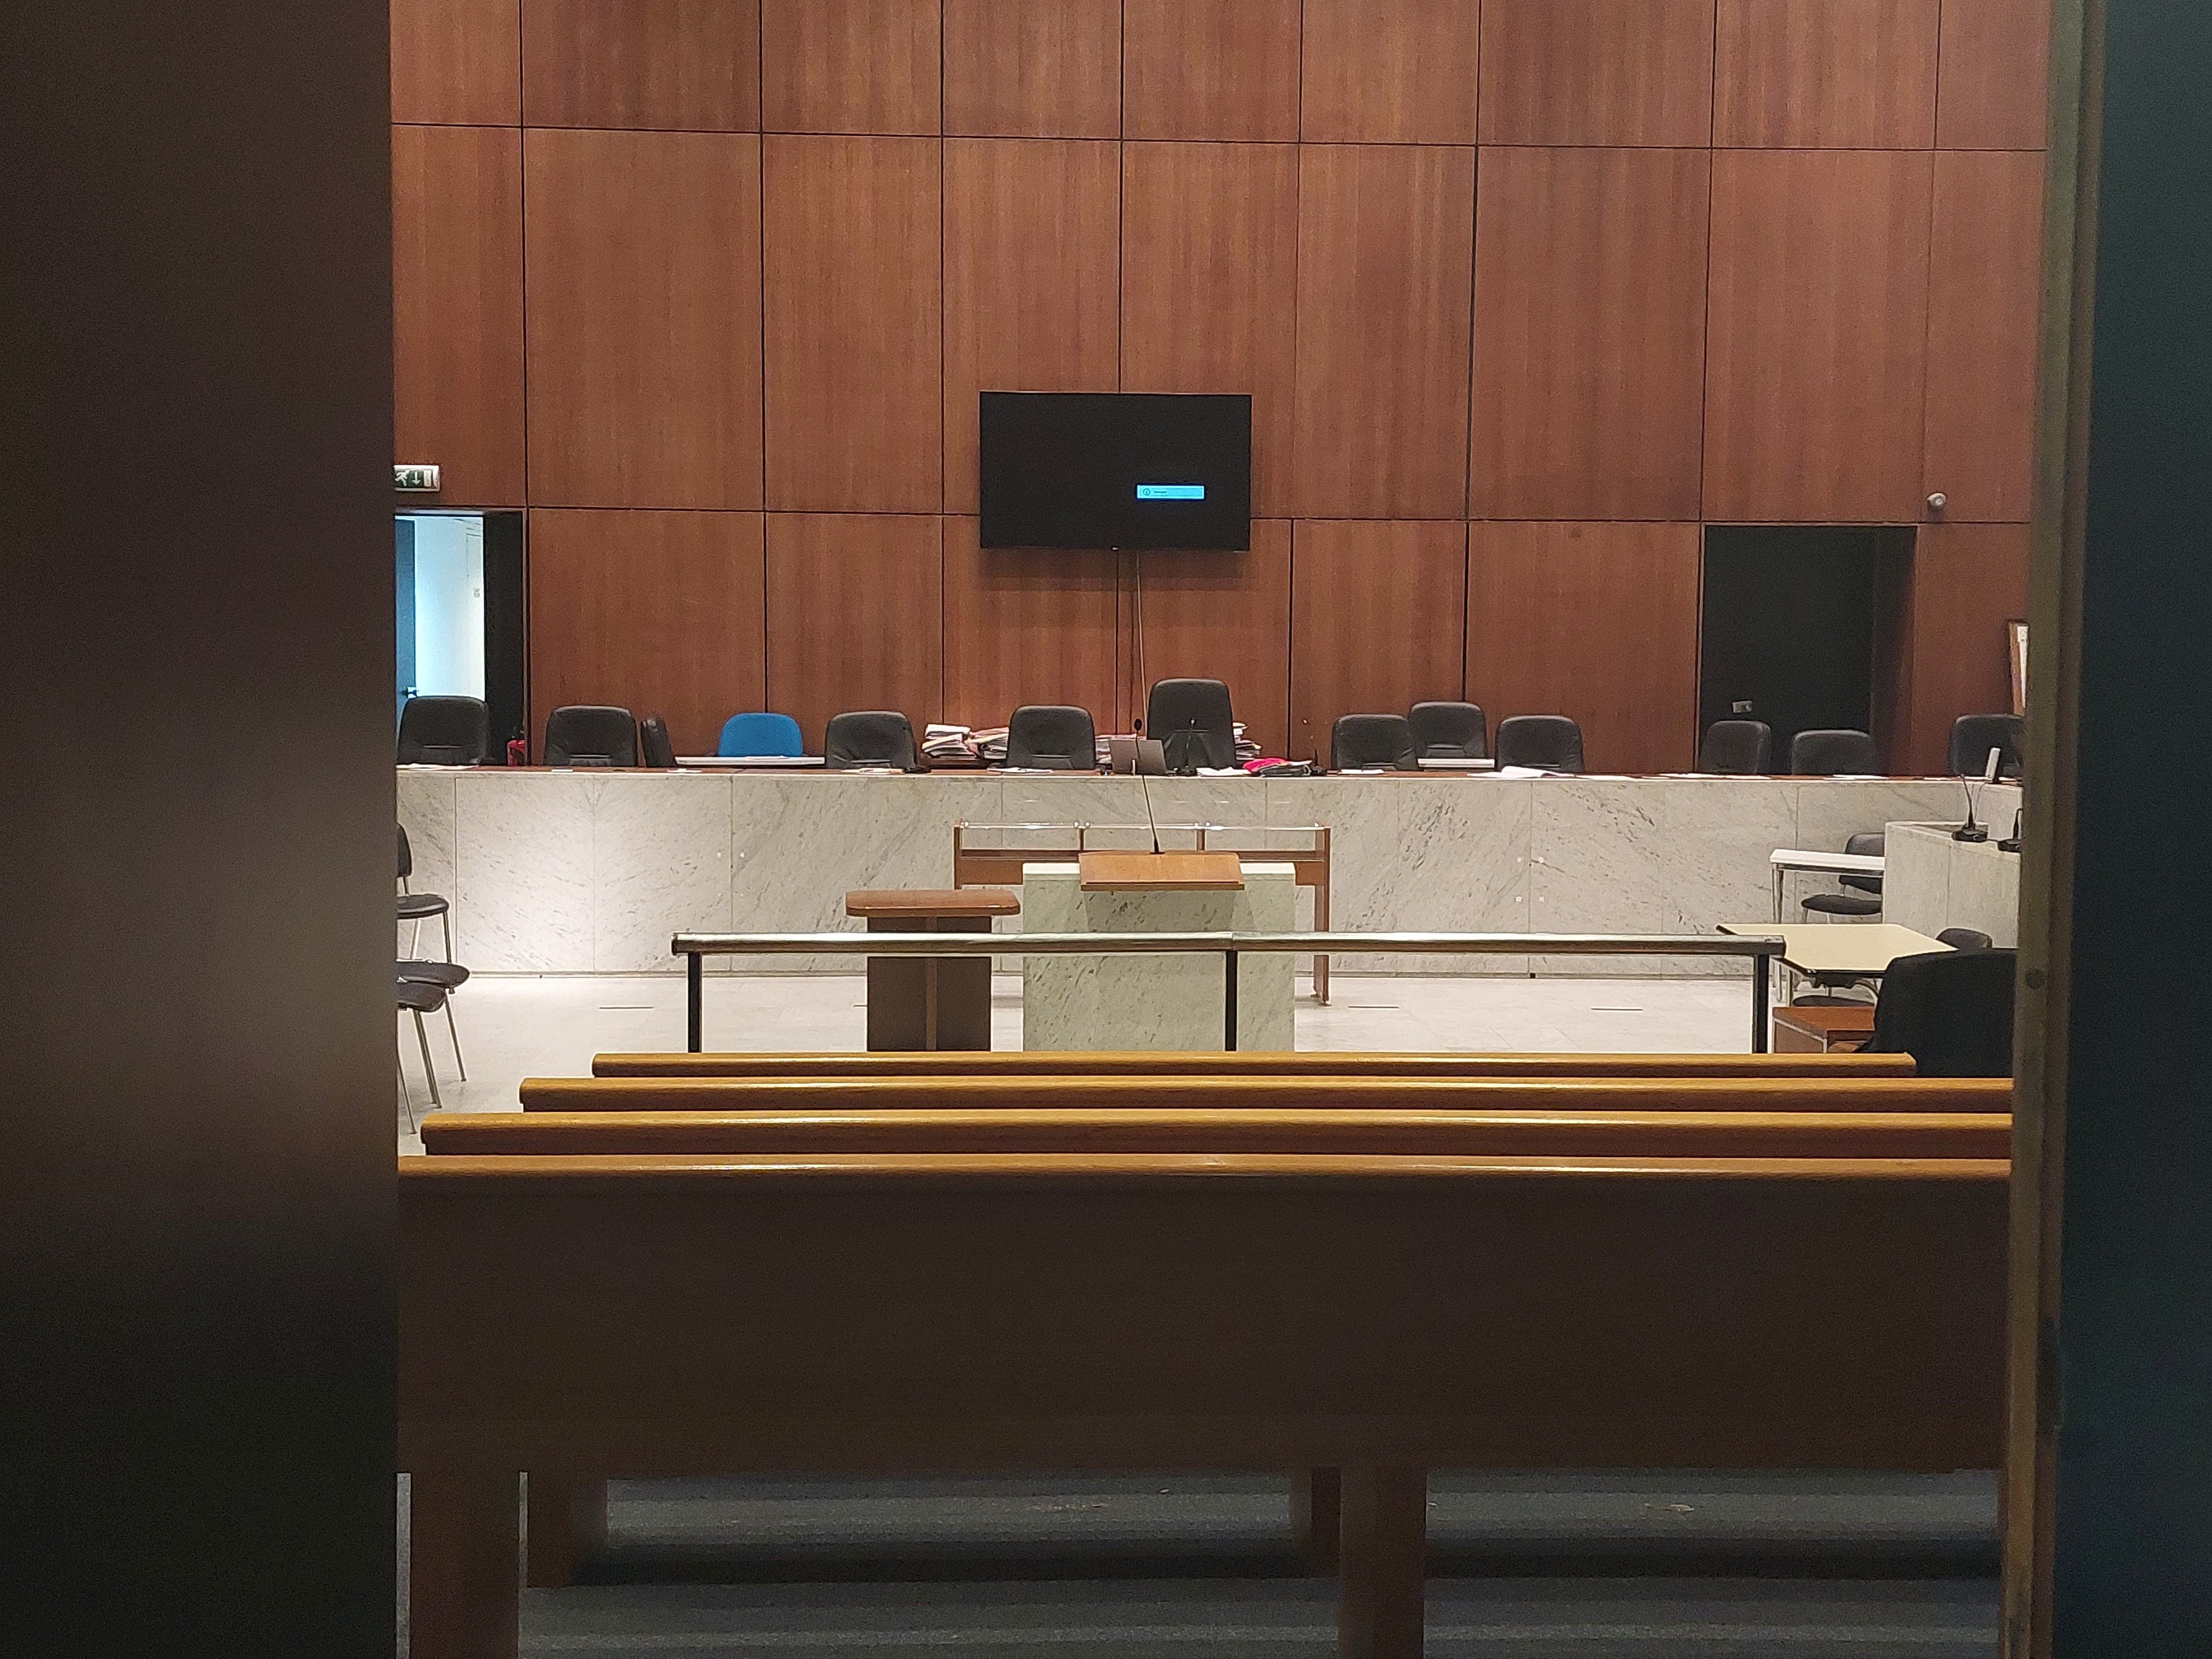 Le procès d'un homme de 37 ans, poursuivi pour les viols de deux patientes de l'hôpital psychiatrique d'Antony en 2020, doit s'ouvrir ce vendredi devant la cour d'assises des Hauts-de-Seine. (Illustration) LP/Valérie Mahaut